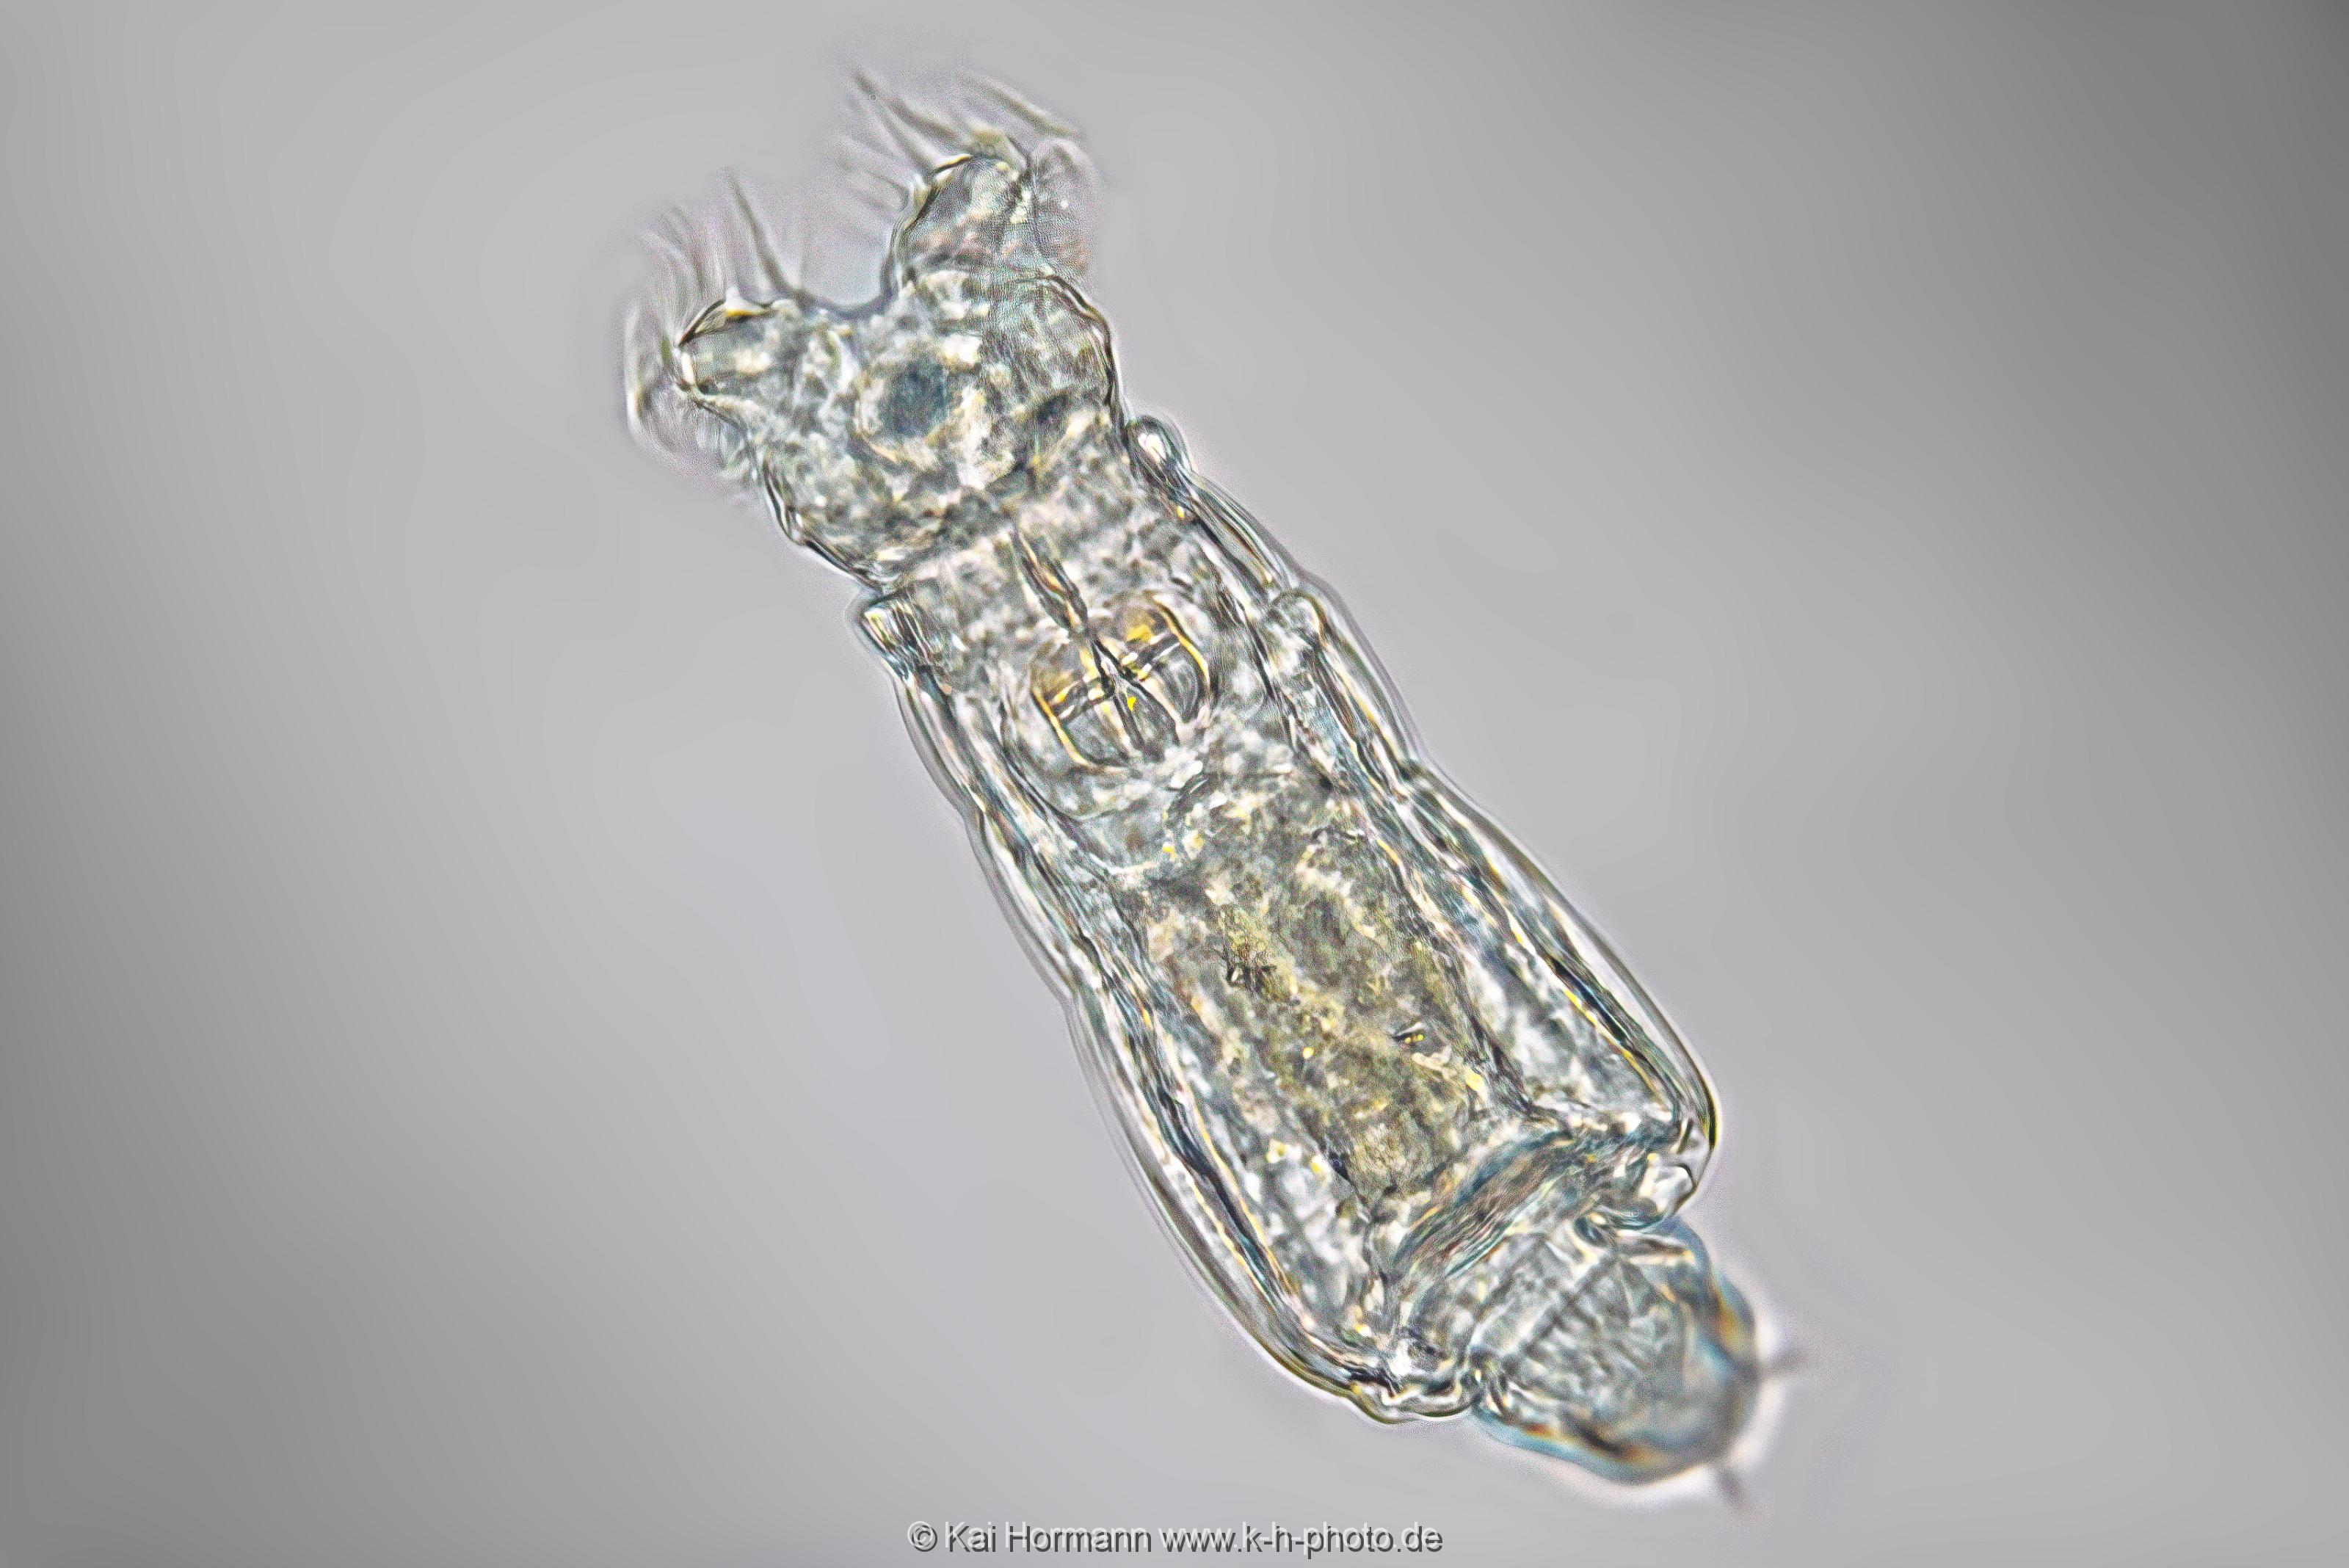 Rädertier. Mikrofotografie: Mikroskopische Aufnahmen von Einzellern, Algen und Kleinstlebewesen.